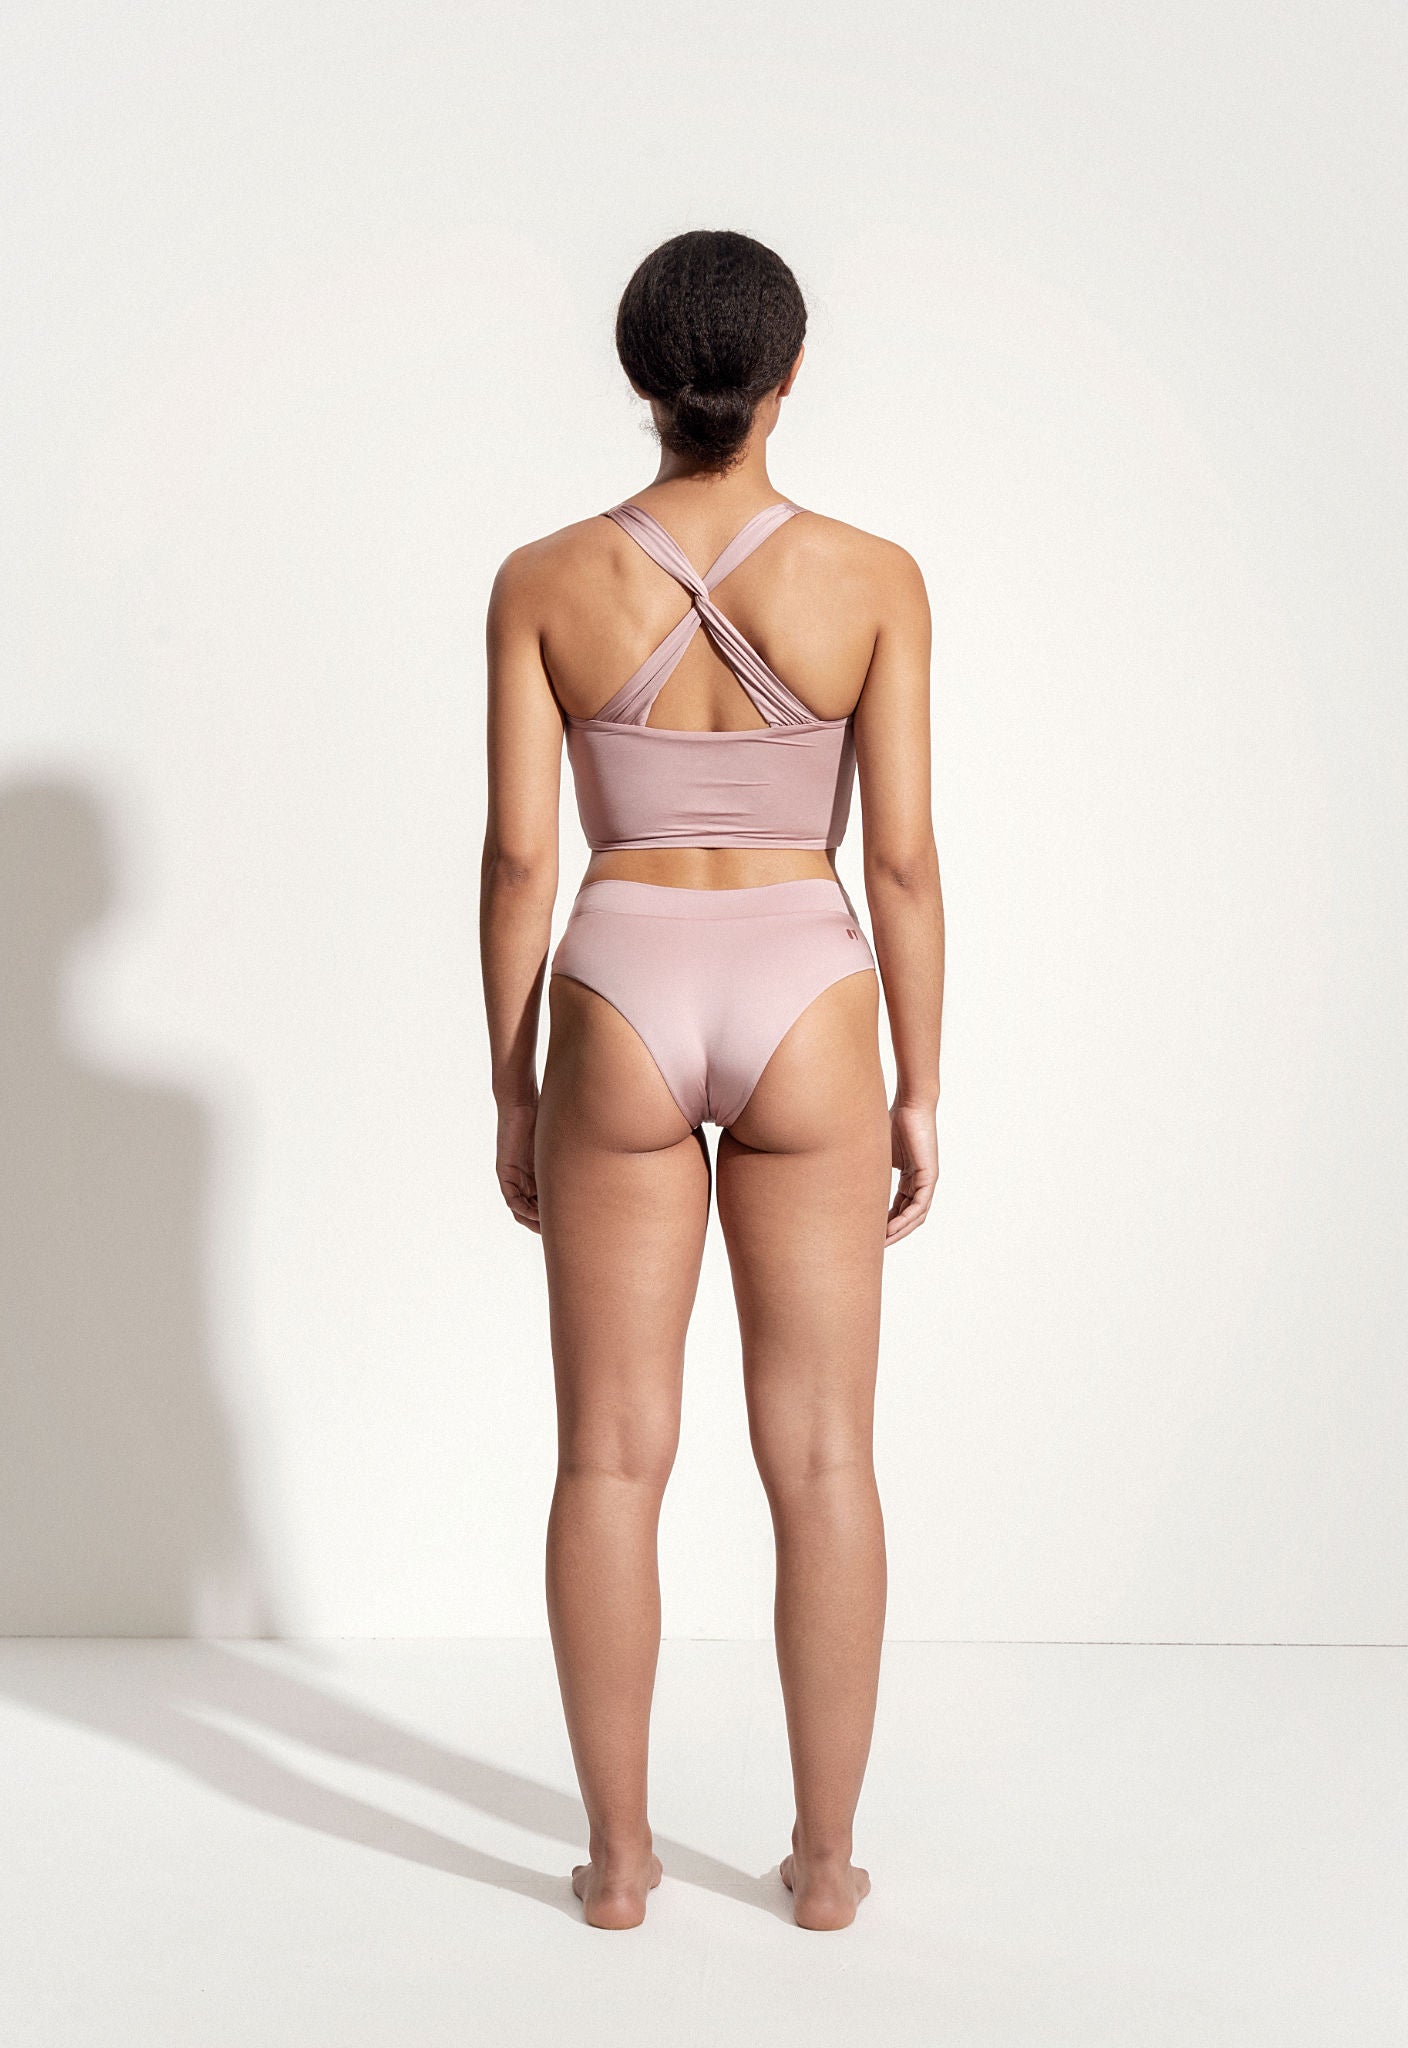 Bikini Bottom "Malaga" in virginia pink